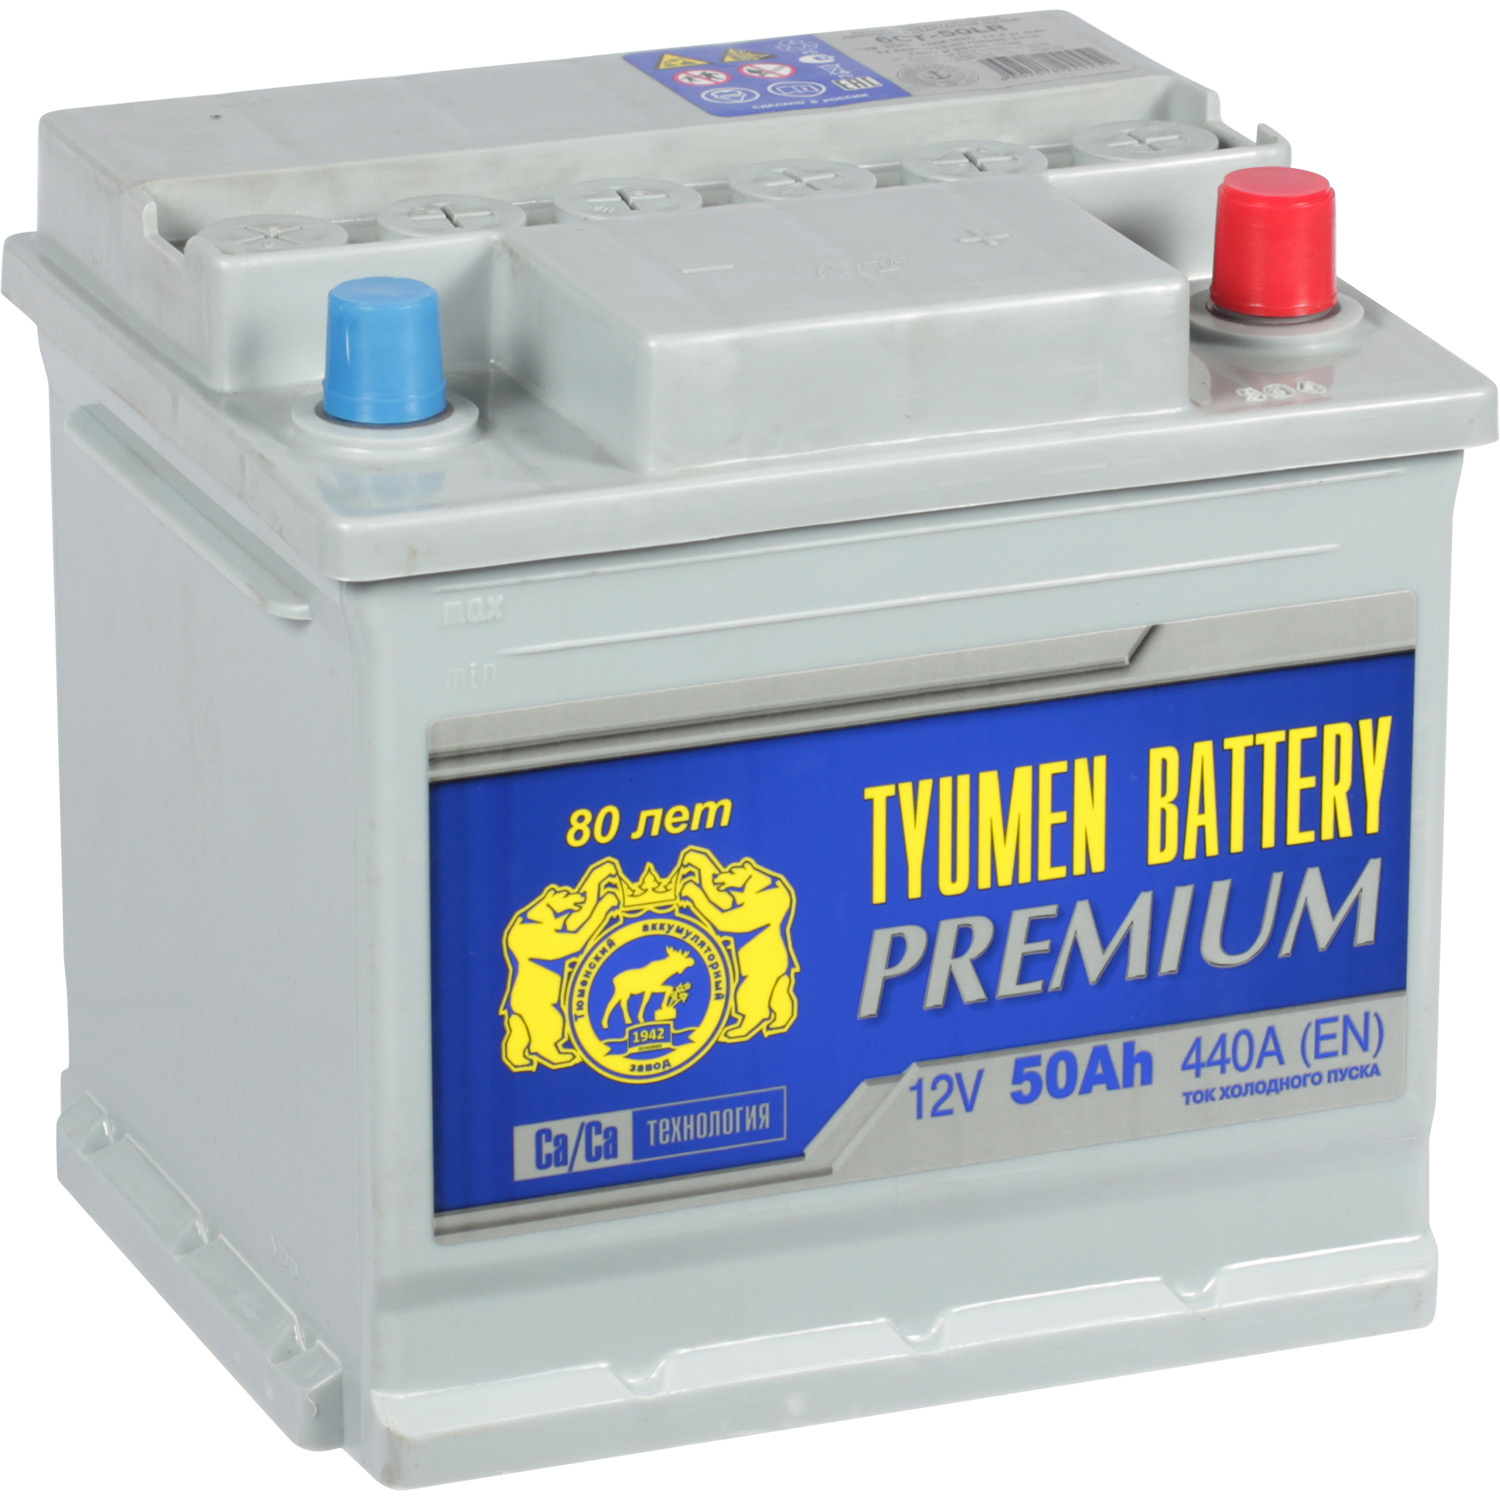 Tyumen Battery Автомобильный аккумулятор Tyumen Battery Premium 50 Ач обратная полярность L1 tyumen battery автомобильный аккумулятор tyumen battery 61 ач прямая полярность lb2